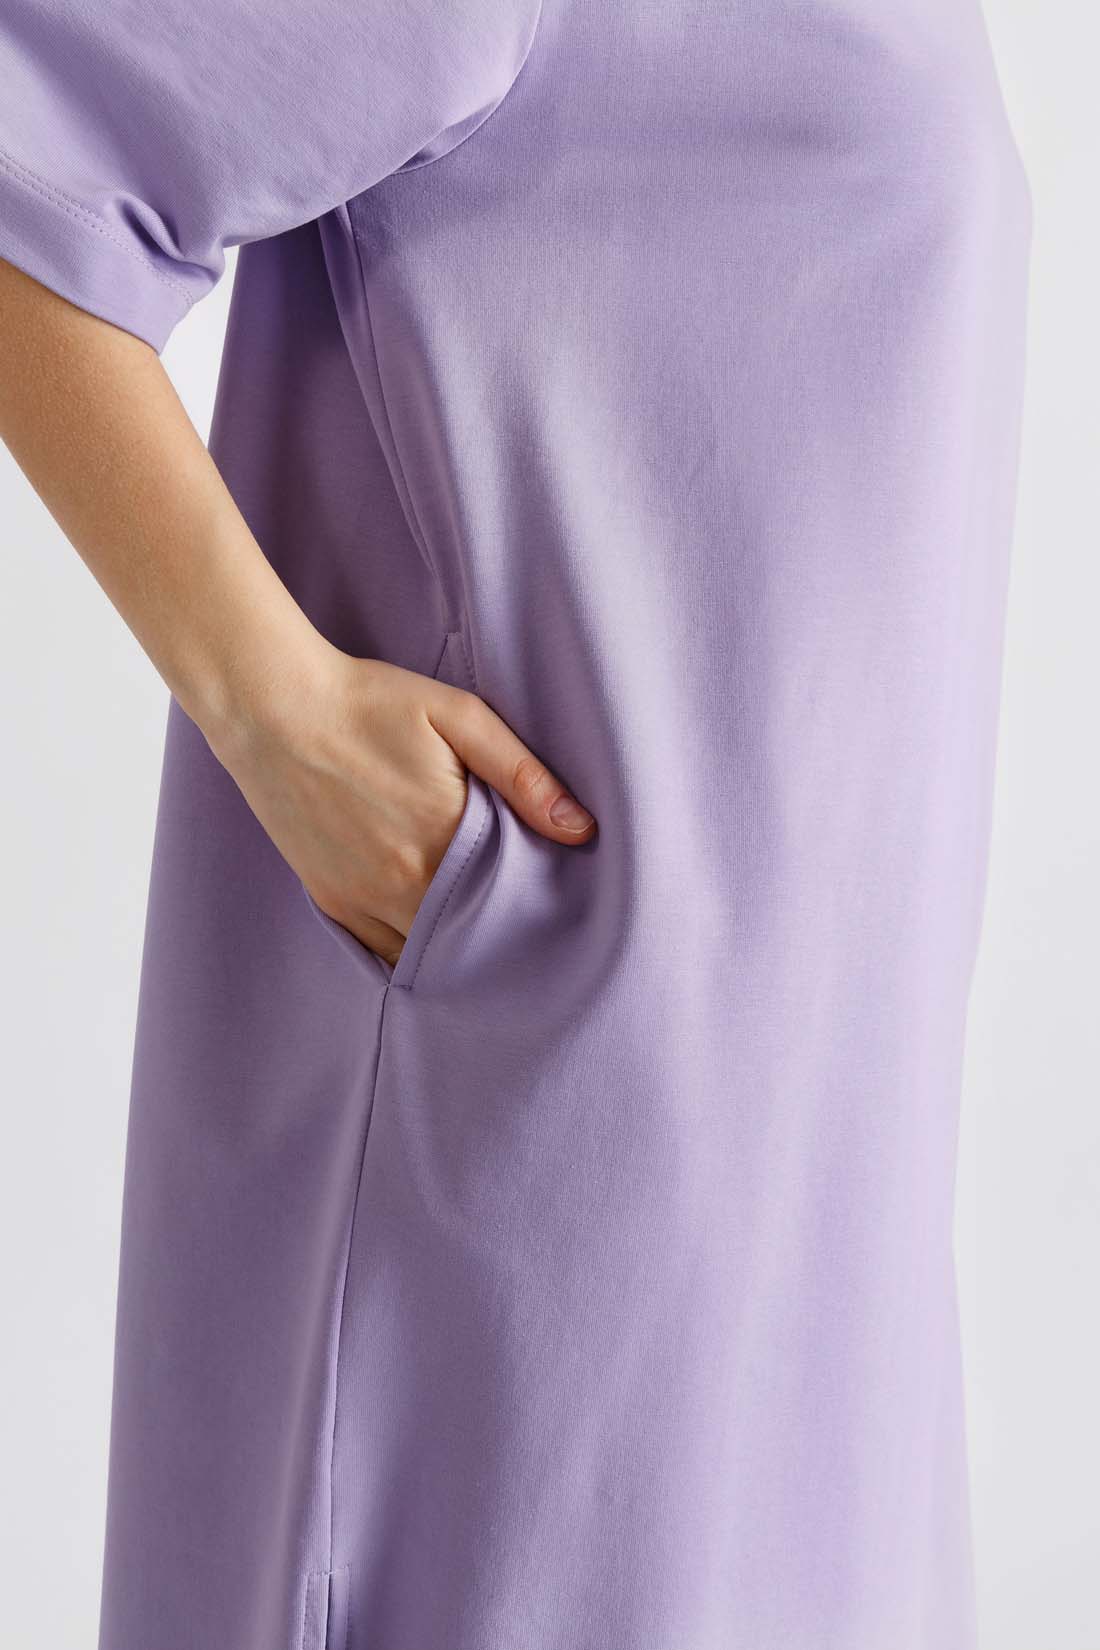 Платье (арт. baon B4522028), размер M, цвет фиолетовый Платье (арт. baon B4522028) - фото 3